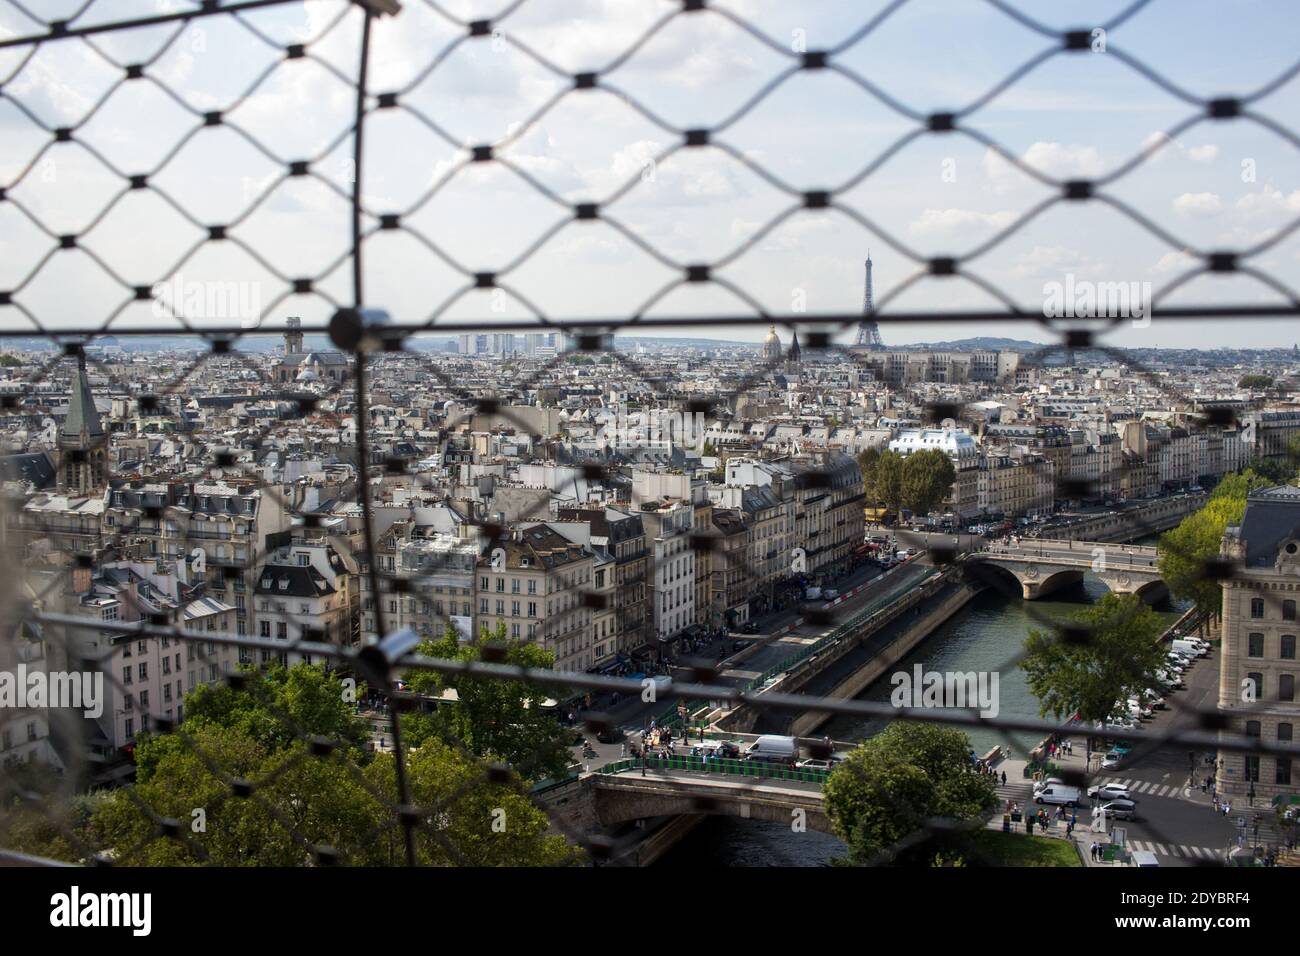 FRA - SOCIÉTÉ - NOTRE-DAME DE PARIS ET DES TOURISTES La Cathédrale Notre-Dame de Paris et les touristes qui la fréquente. FRA - SOCIETY - NOTRE-DAME O Stock Photo